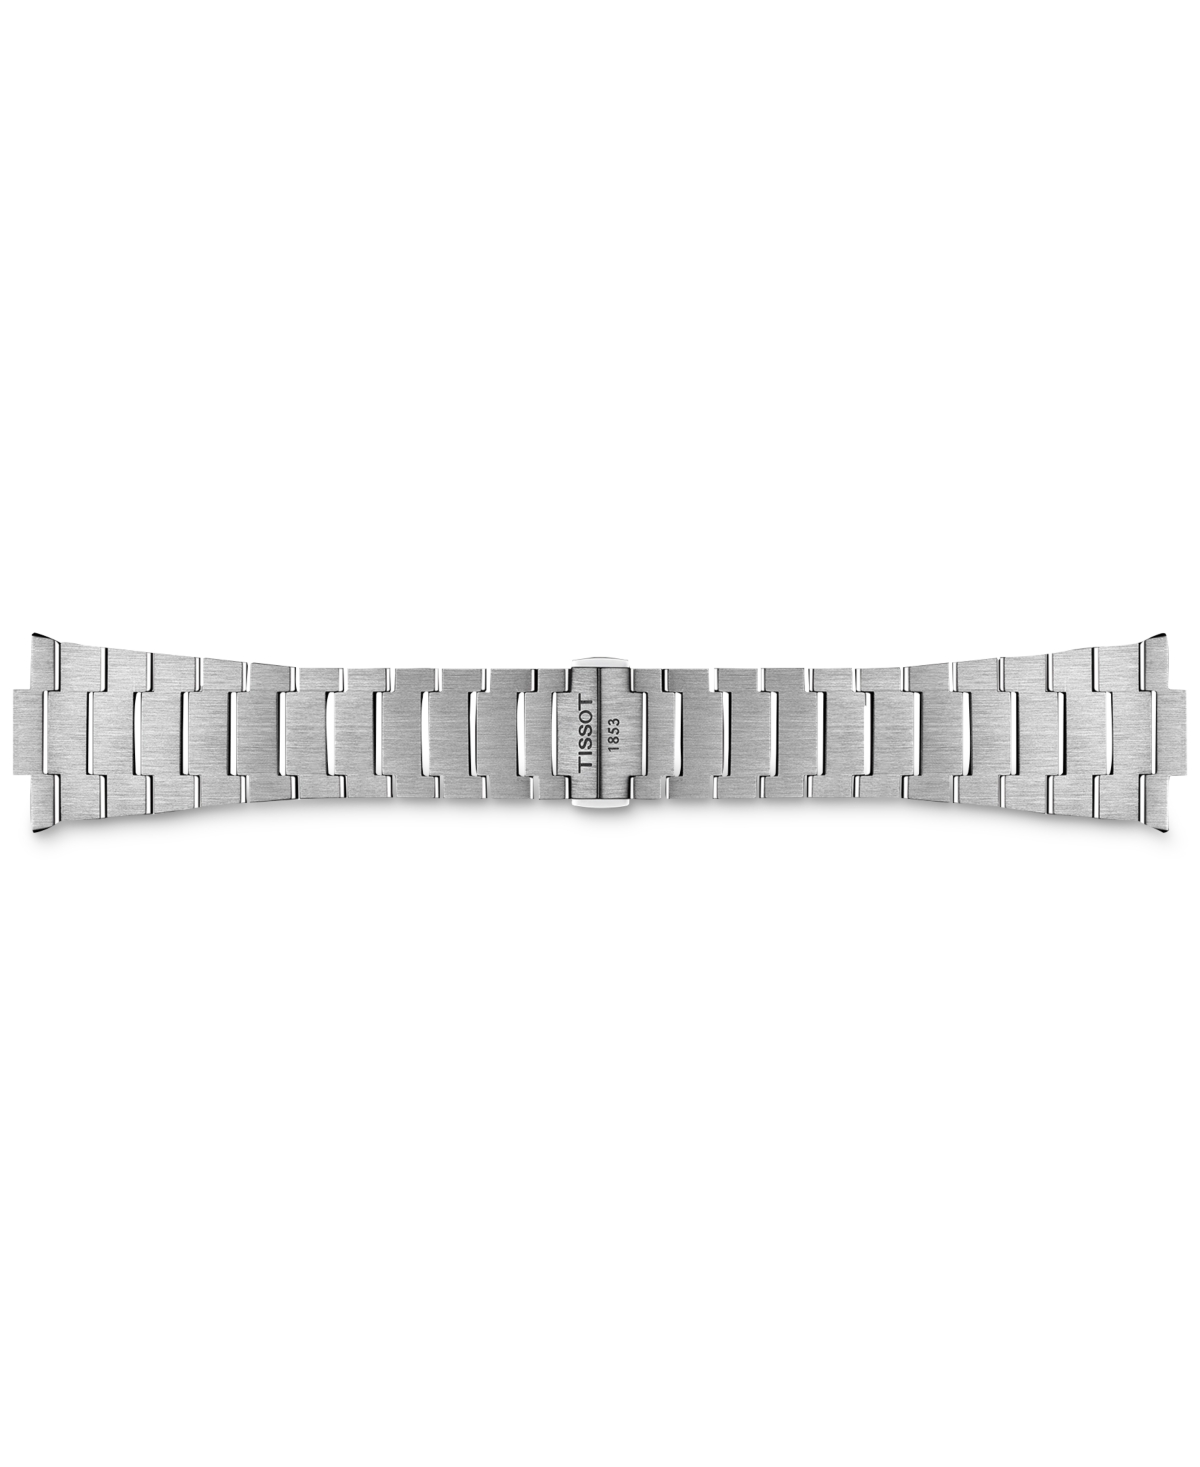 Shop Tissot Men's Swiss Automatic Prx Powermatic 80 Stainless Steel Bracelet Watch 40mm In Grey